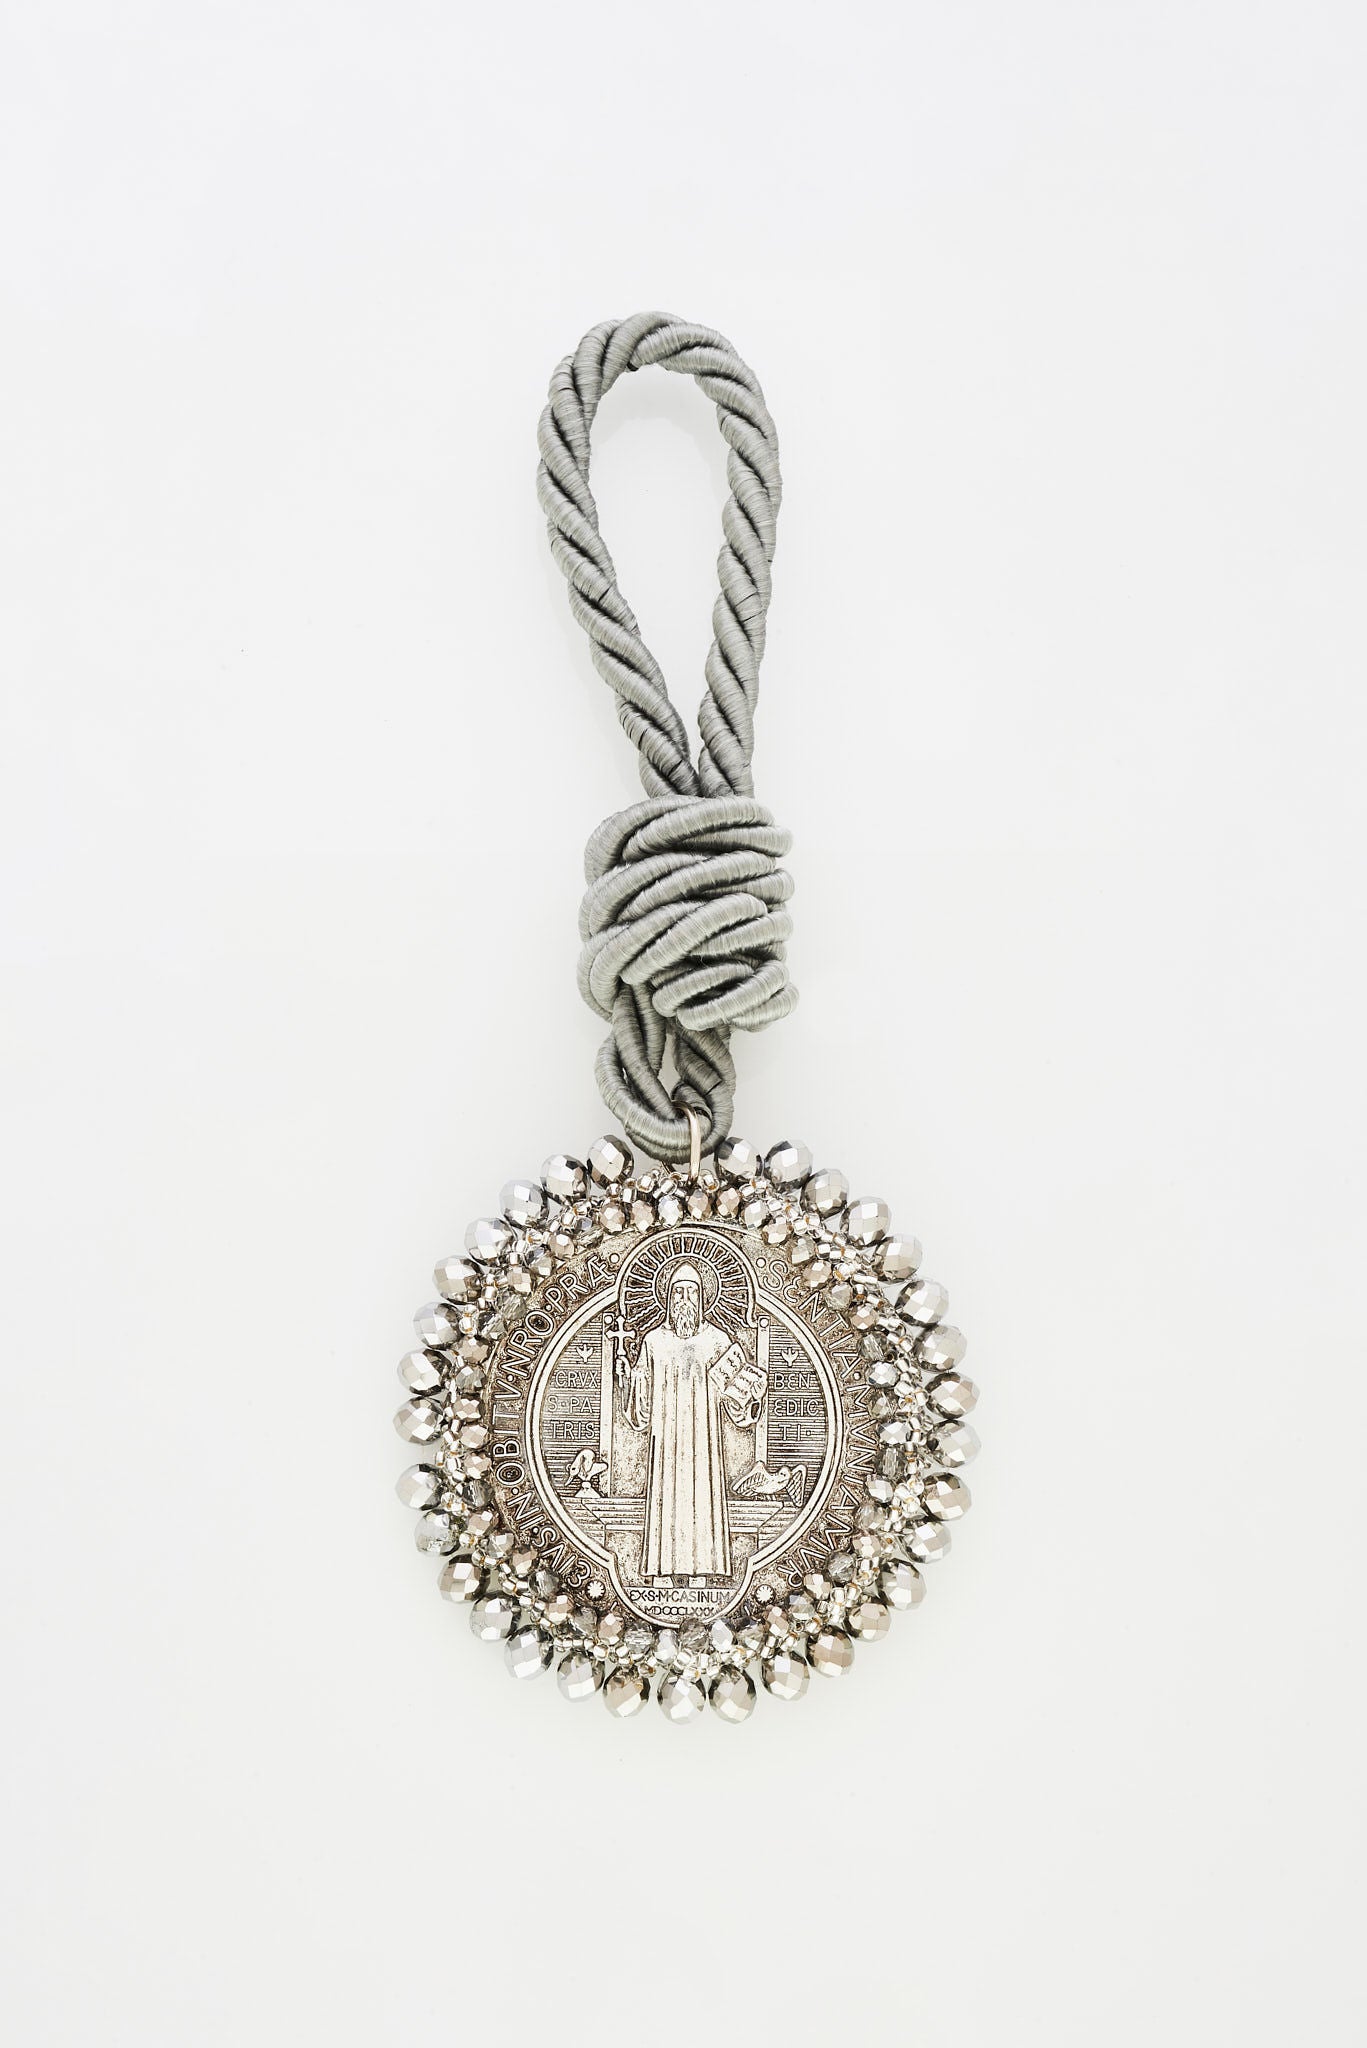 
Medium medallion